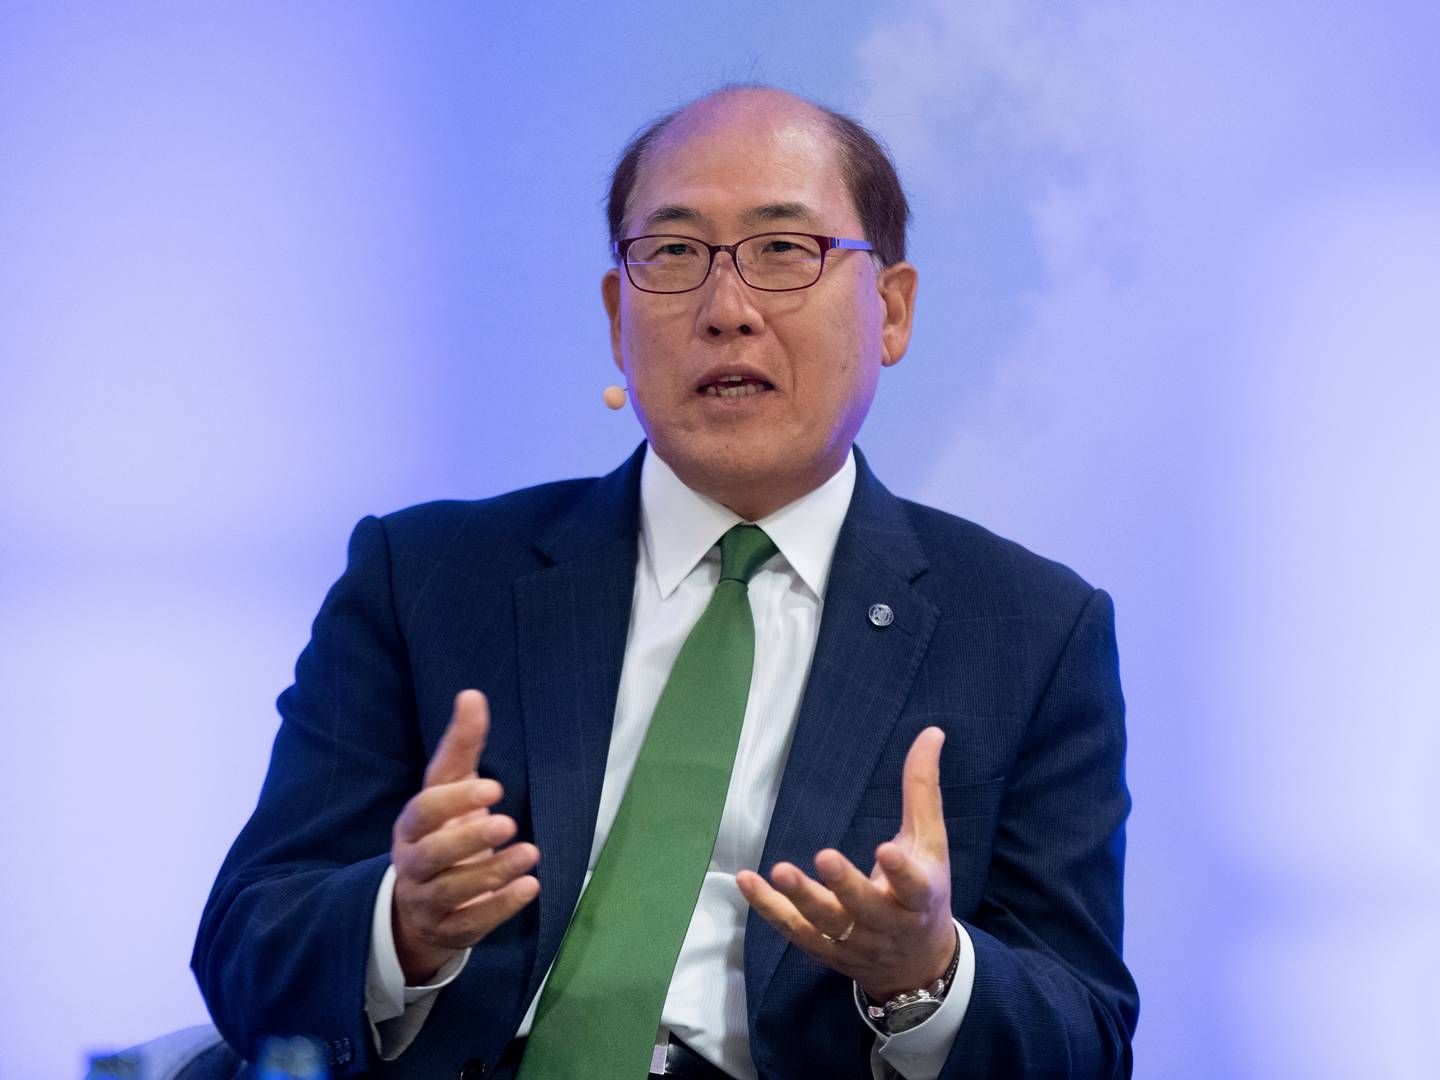 Sydkoreanske Kitack Lim er siddende generalsekretær for FN's søfartsorganisation IMO. | Foto: Daniel Reinhardt/AP/Ritzau Scanpix